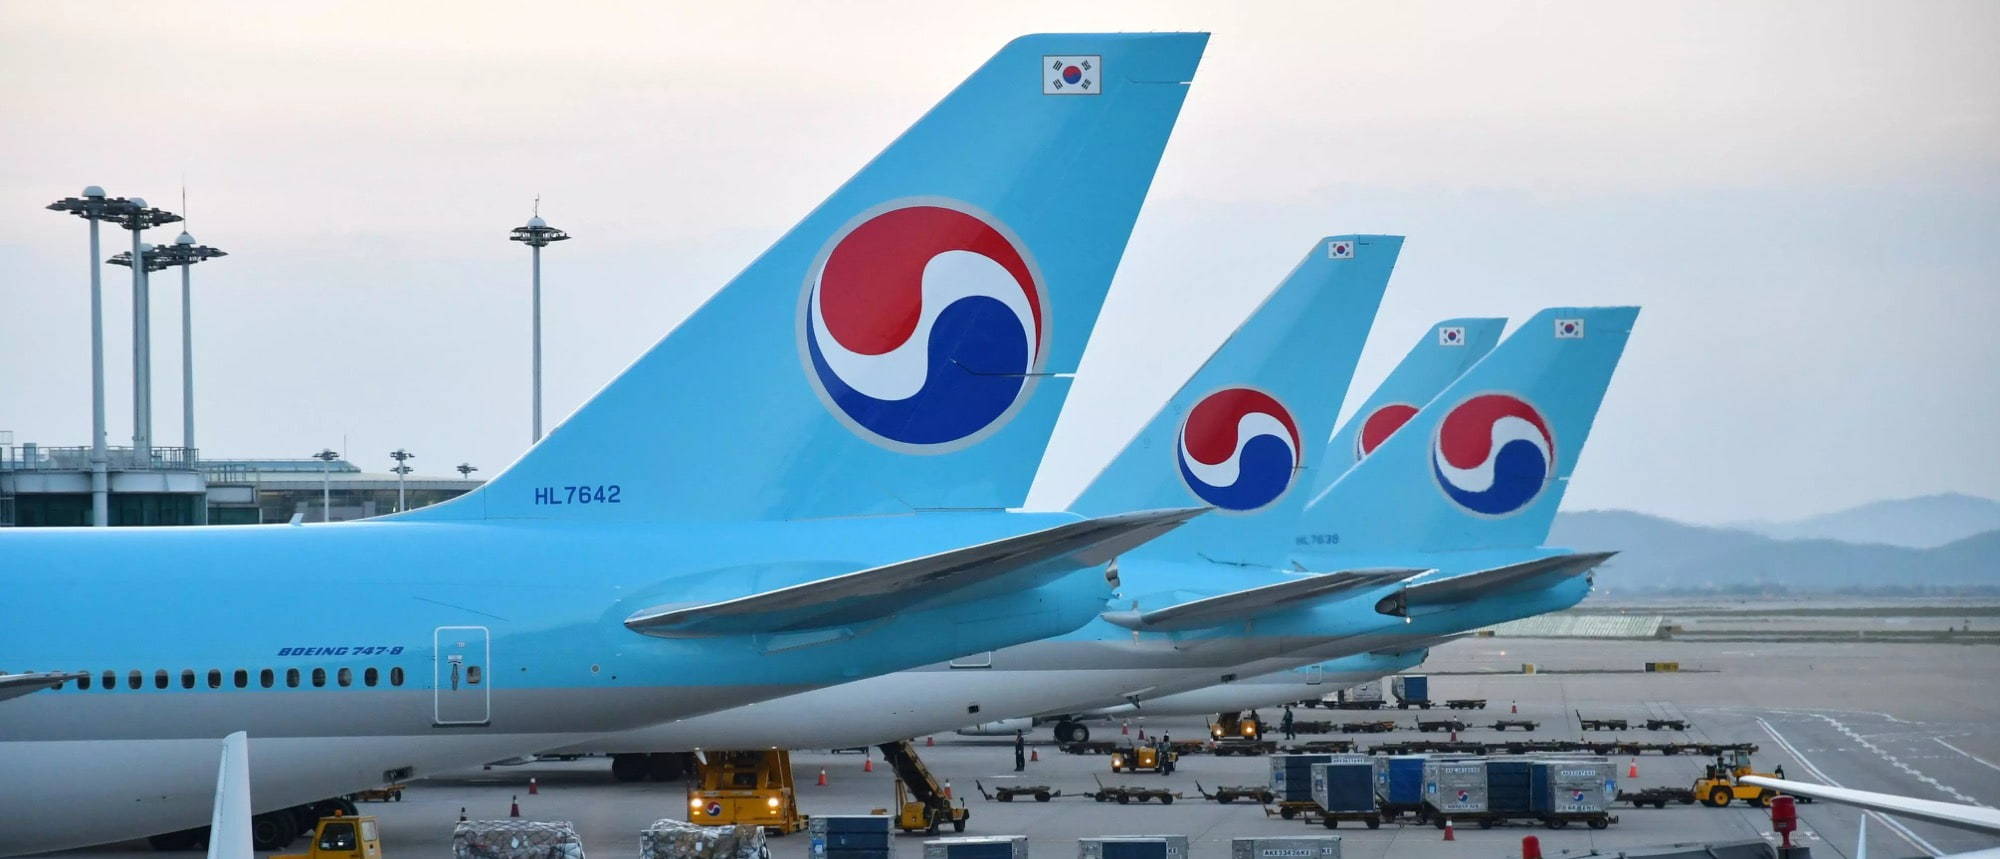 Korean Air B748 Jobs | Boeing 747 Loading on Tarmac